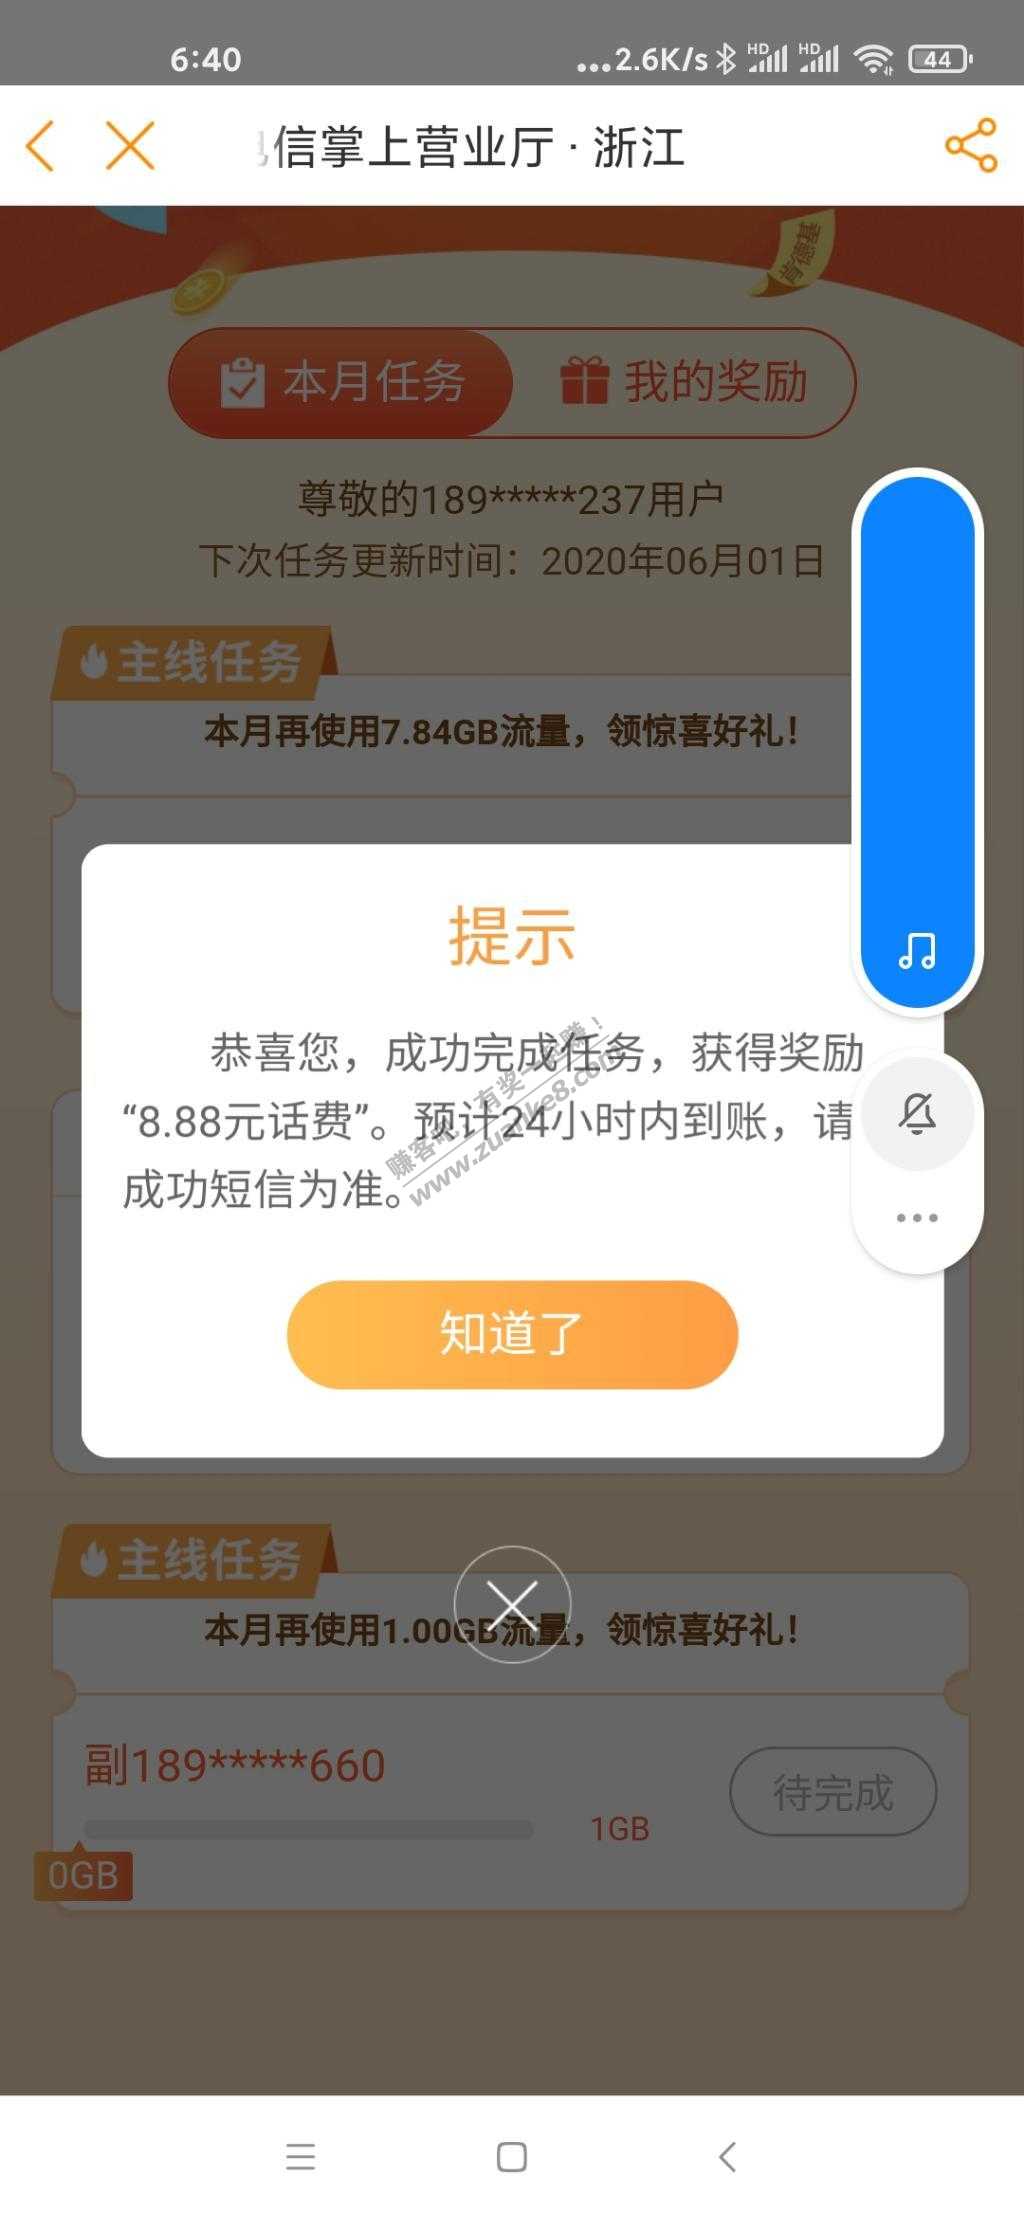 电信app刷流量得话费-可能限制浙江-我是浙江的-惠小助(52huixz.com)